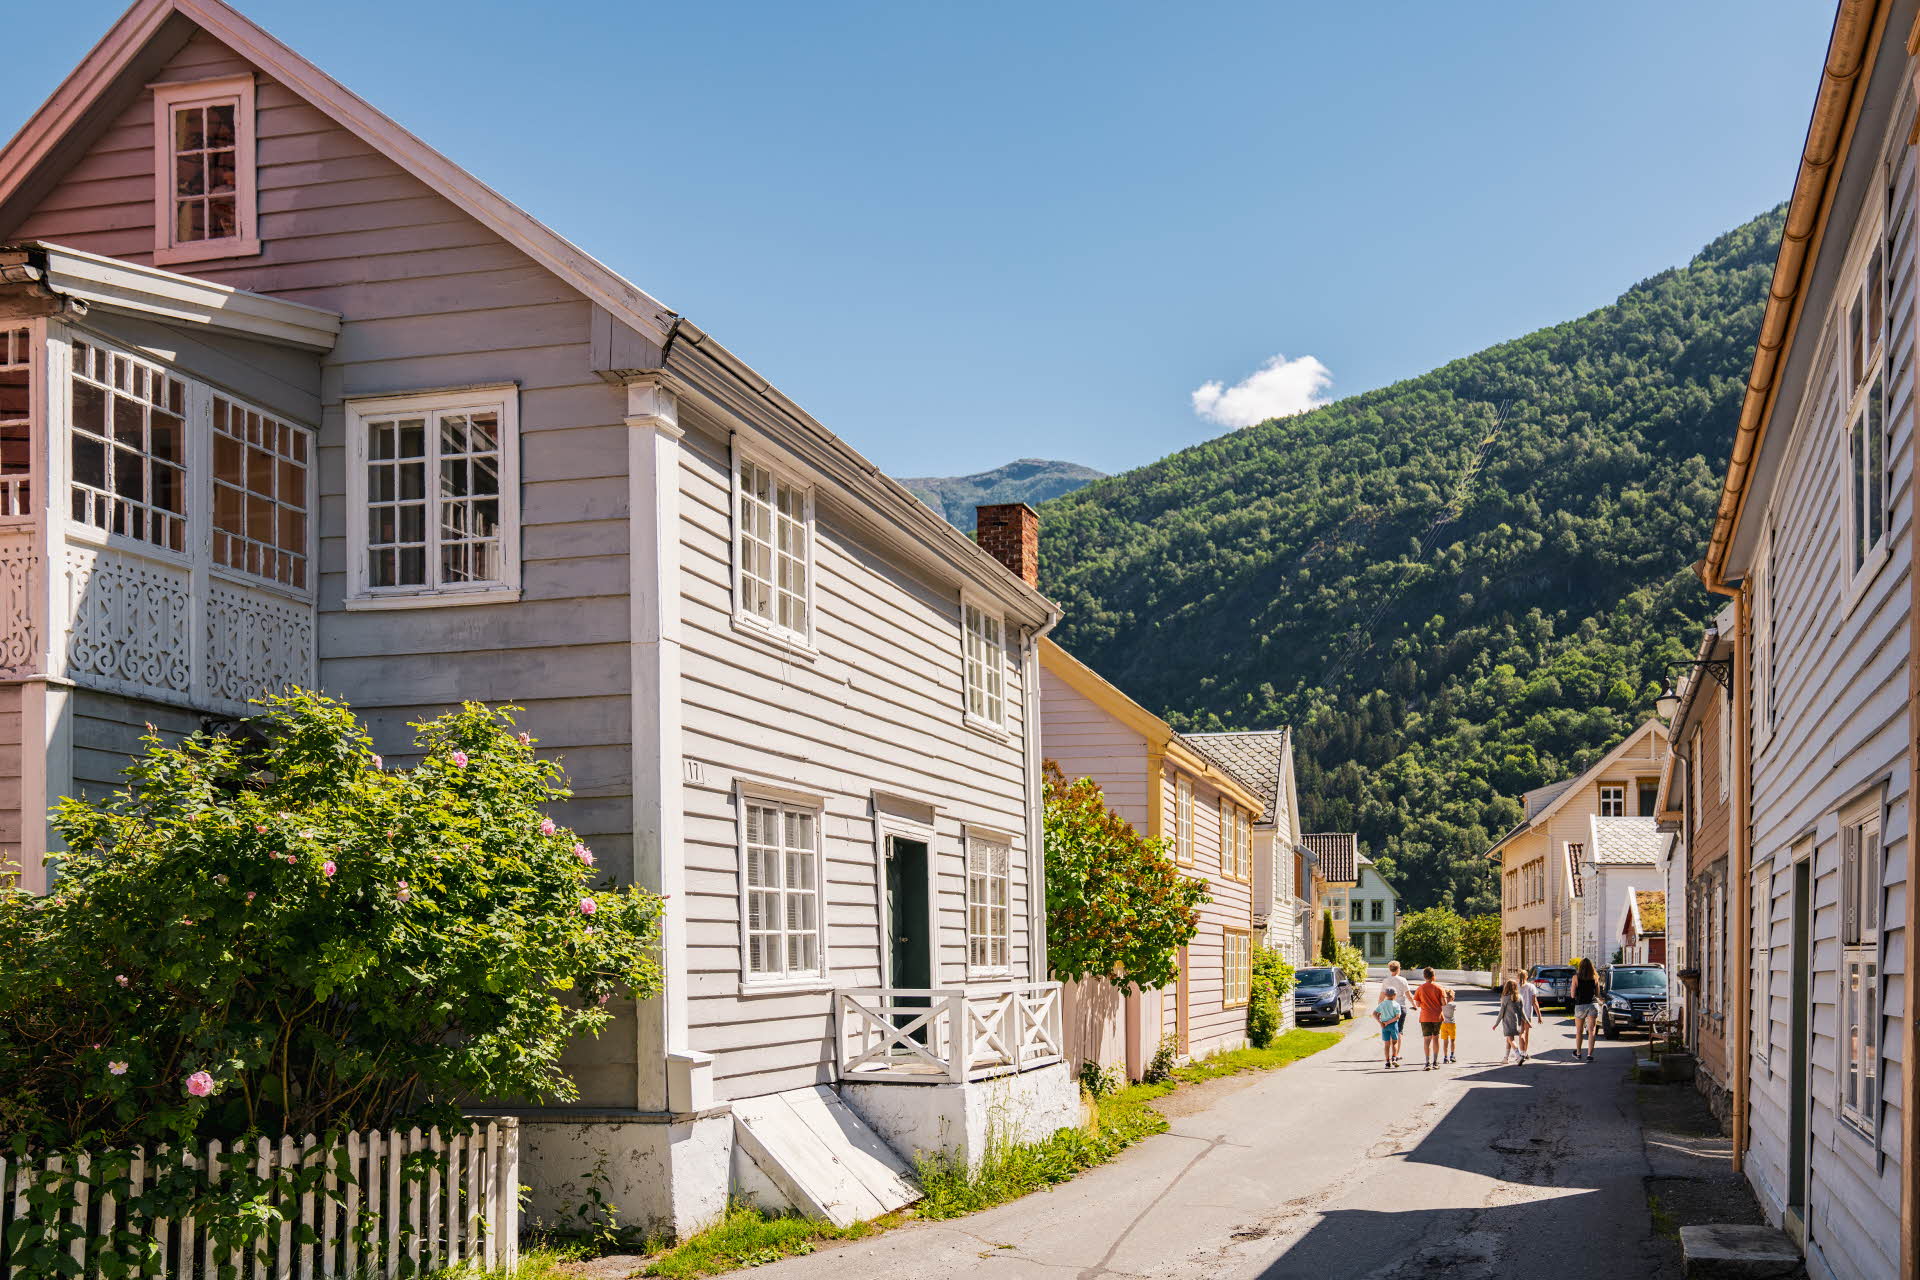 Gemütliche kleine Häuser in der Altstadt von Lærdal an einem Sommertag, in der Ferne Spaziergänger